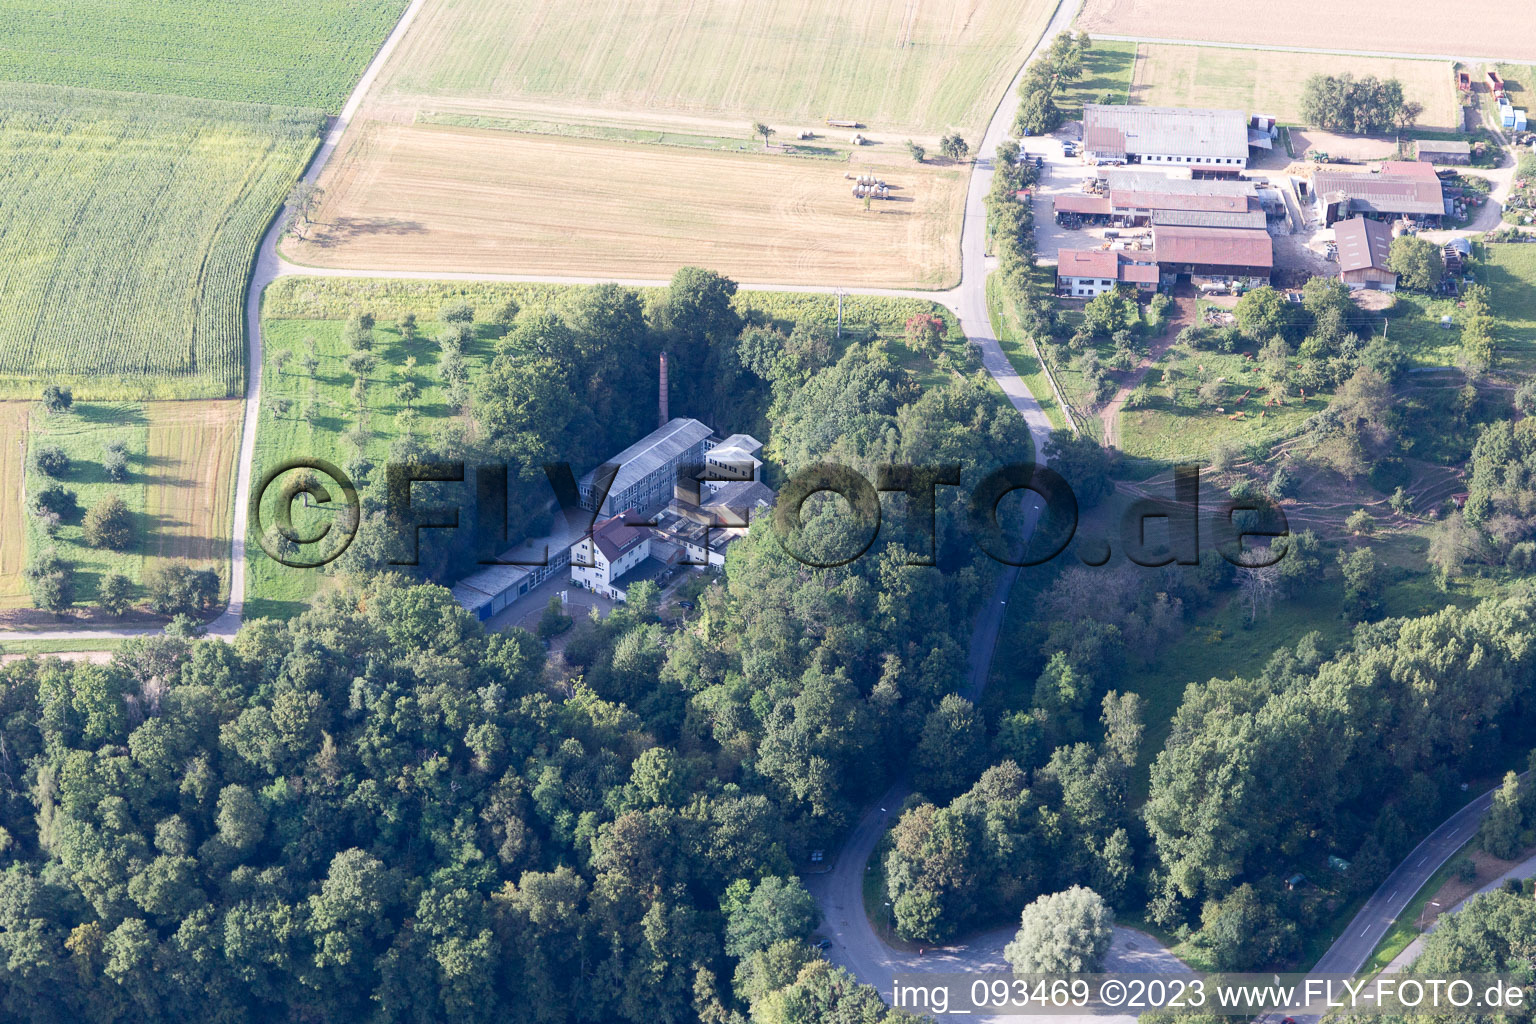 Maulbronn im Bundesland Baden-Württemberg, Deutschland aus der Luft betrachtet